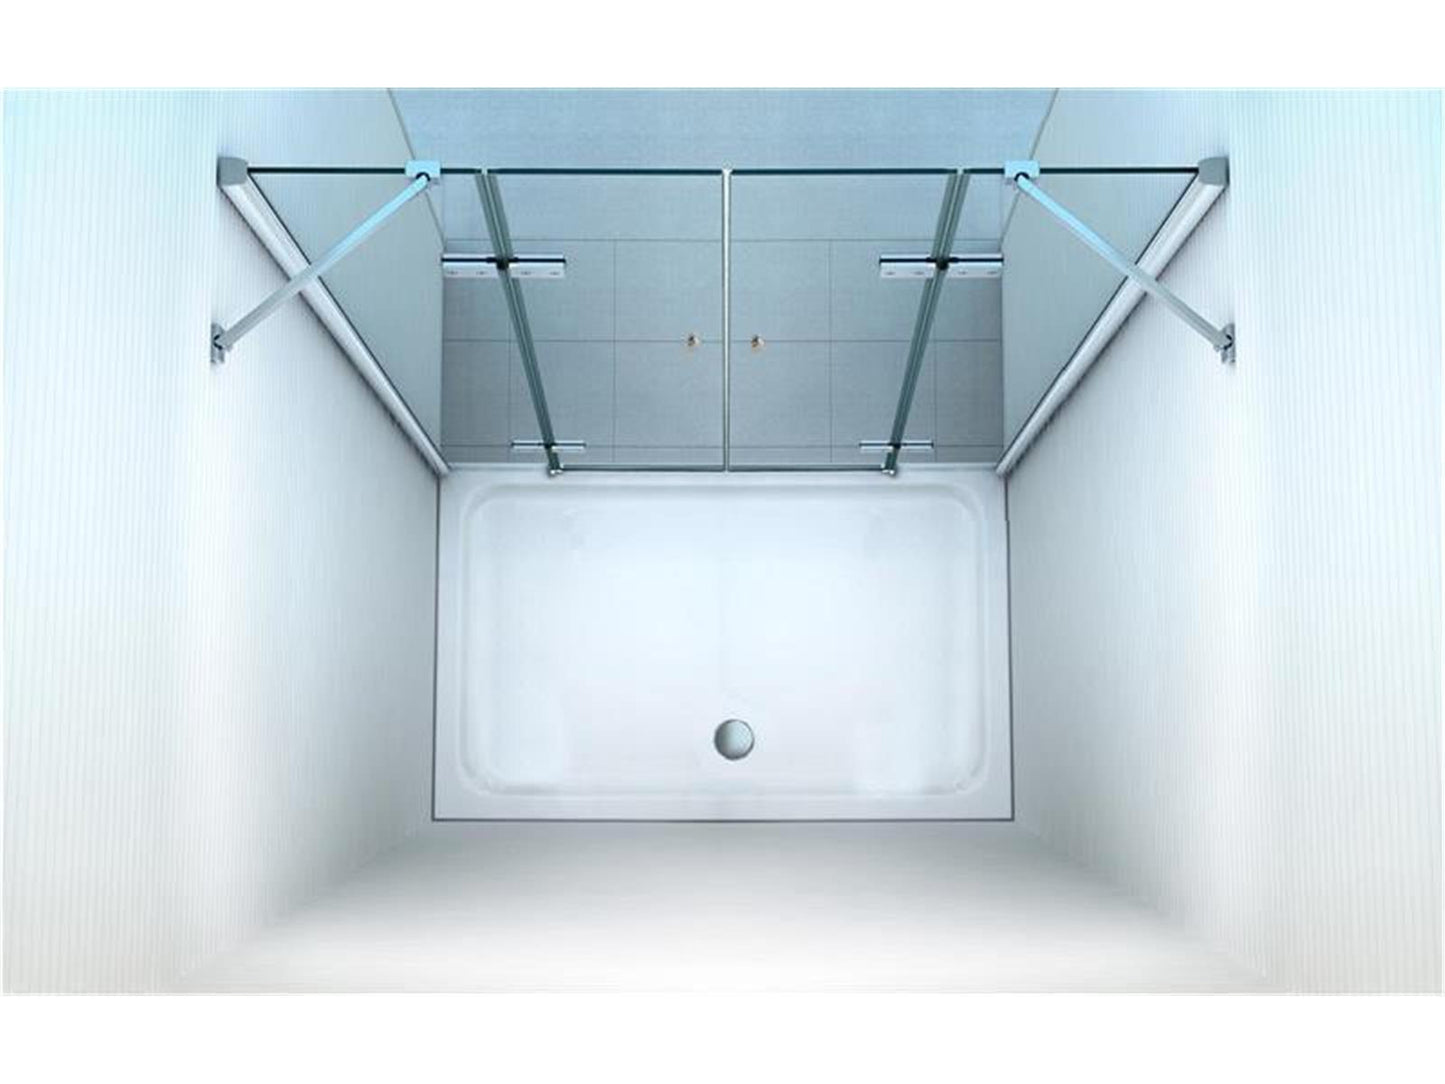 GlasHomeCenter - Cabina de nicho Utah (160 x 180 cm) - vidrio de seguridad templado de 8 mm - sin plato de ducha